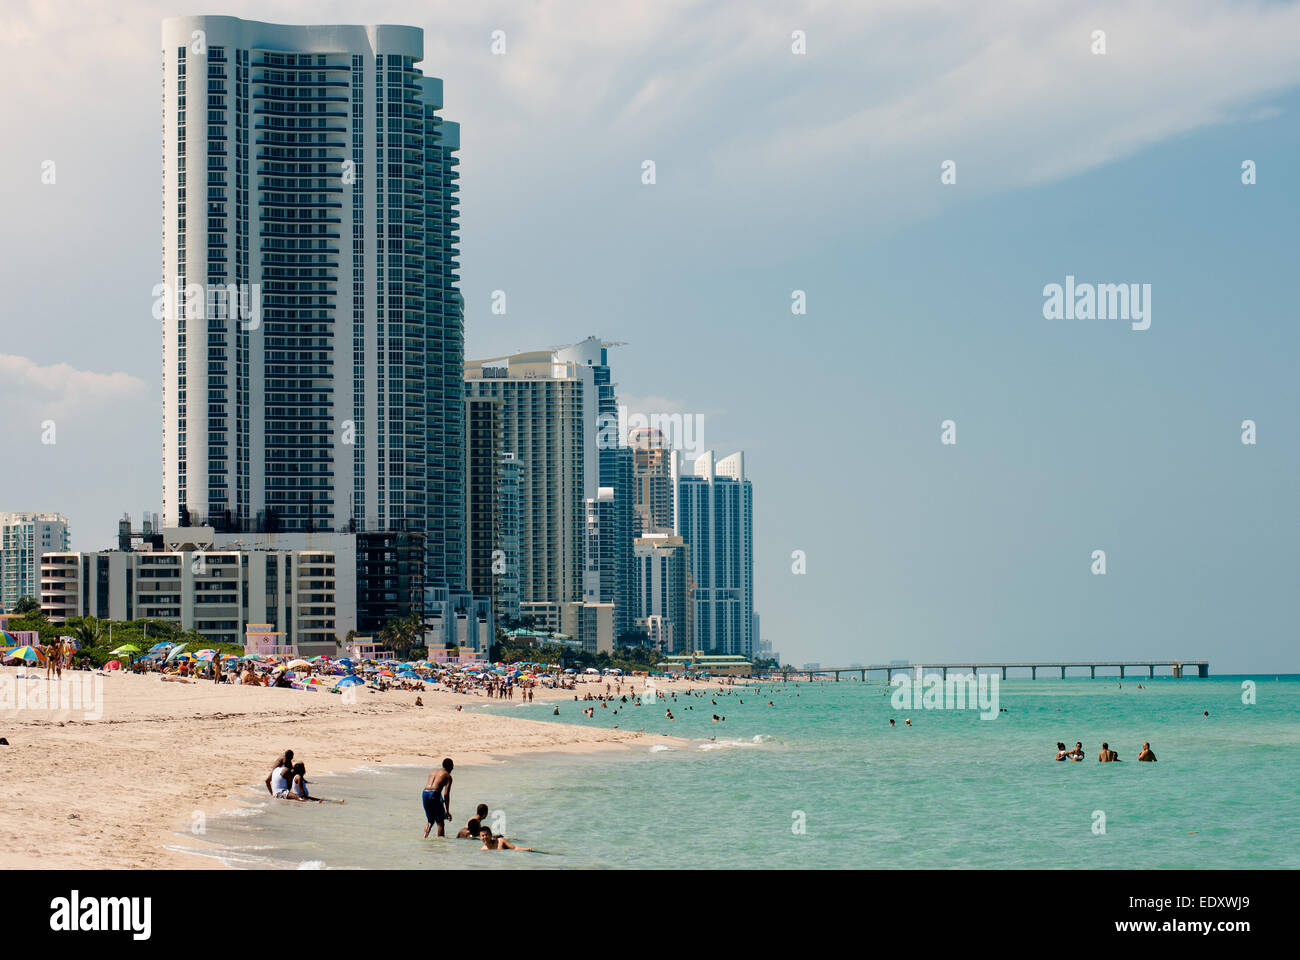 Miami beach Stock Photo